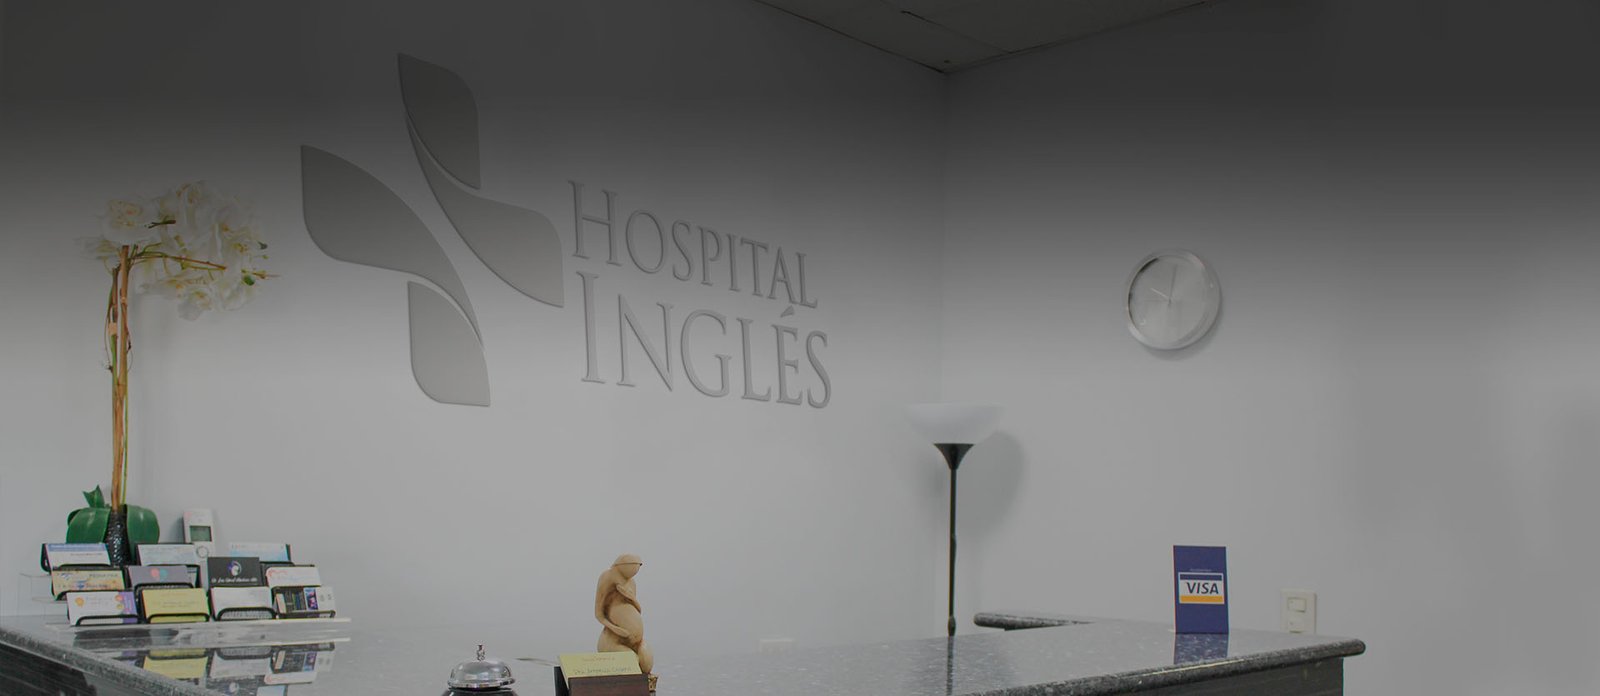 Hospital Inglés